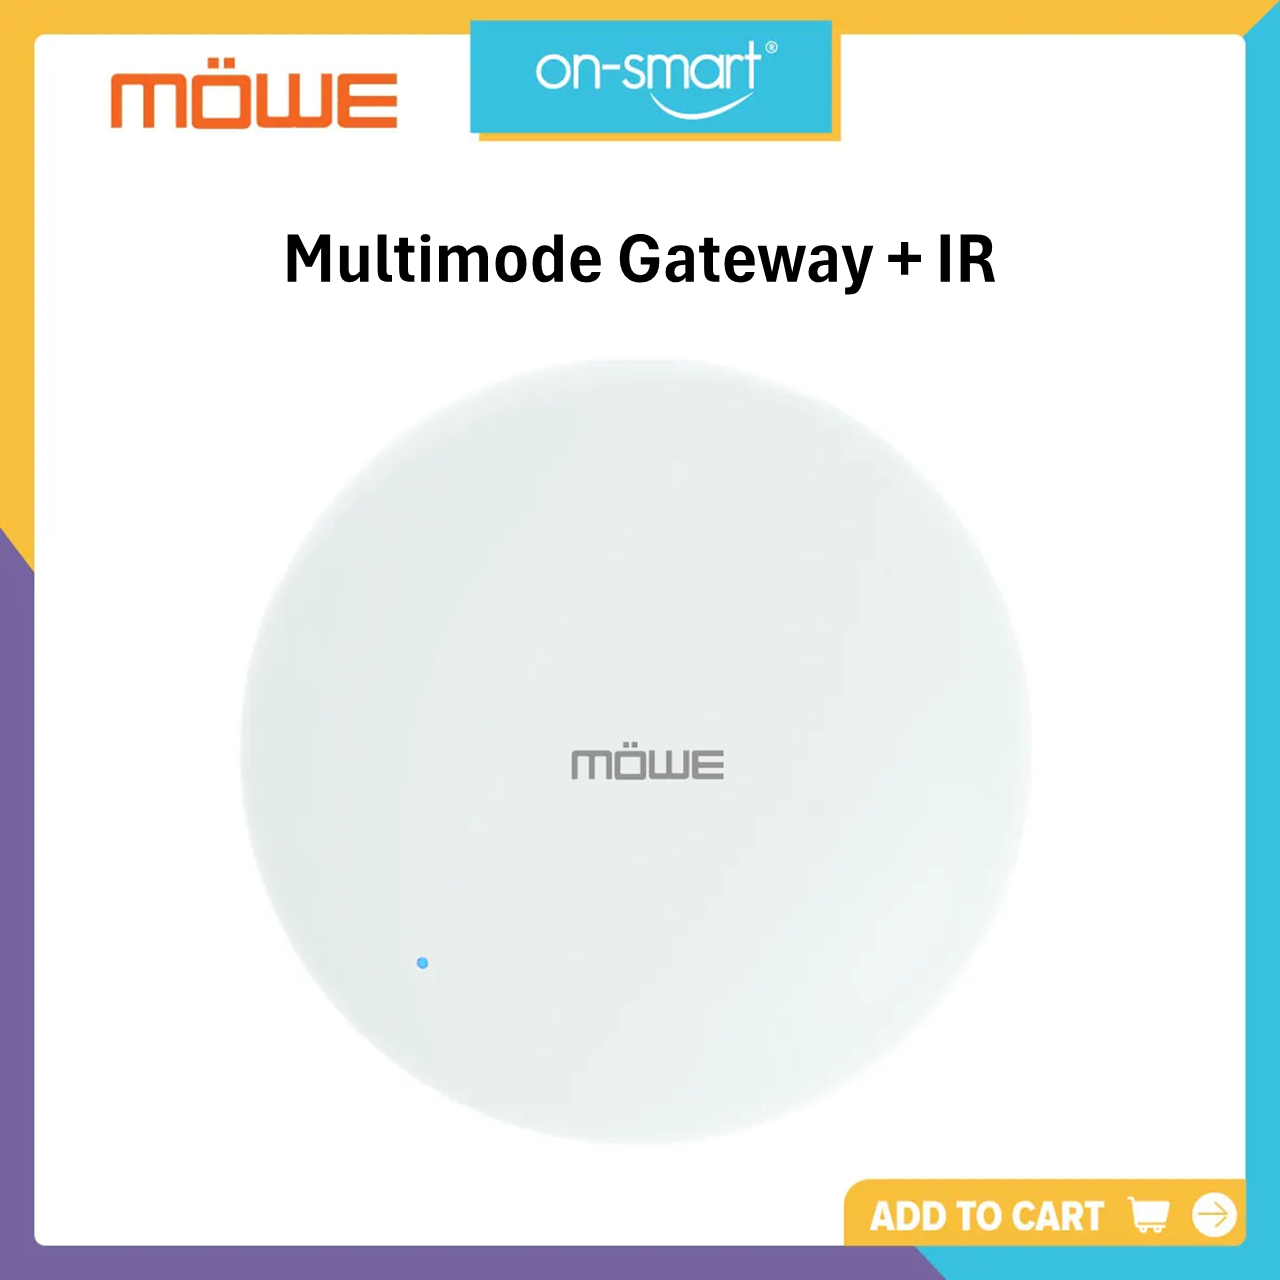 MOWE Multimode Gateway + IR